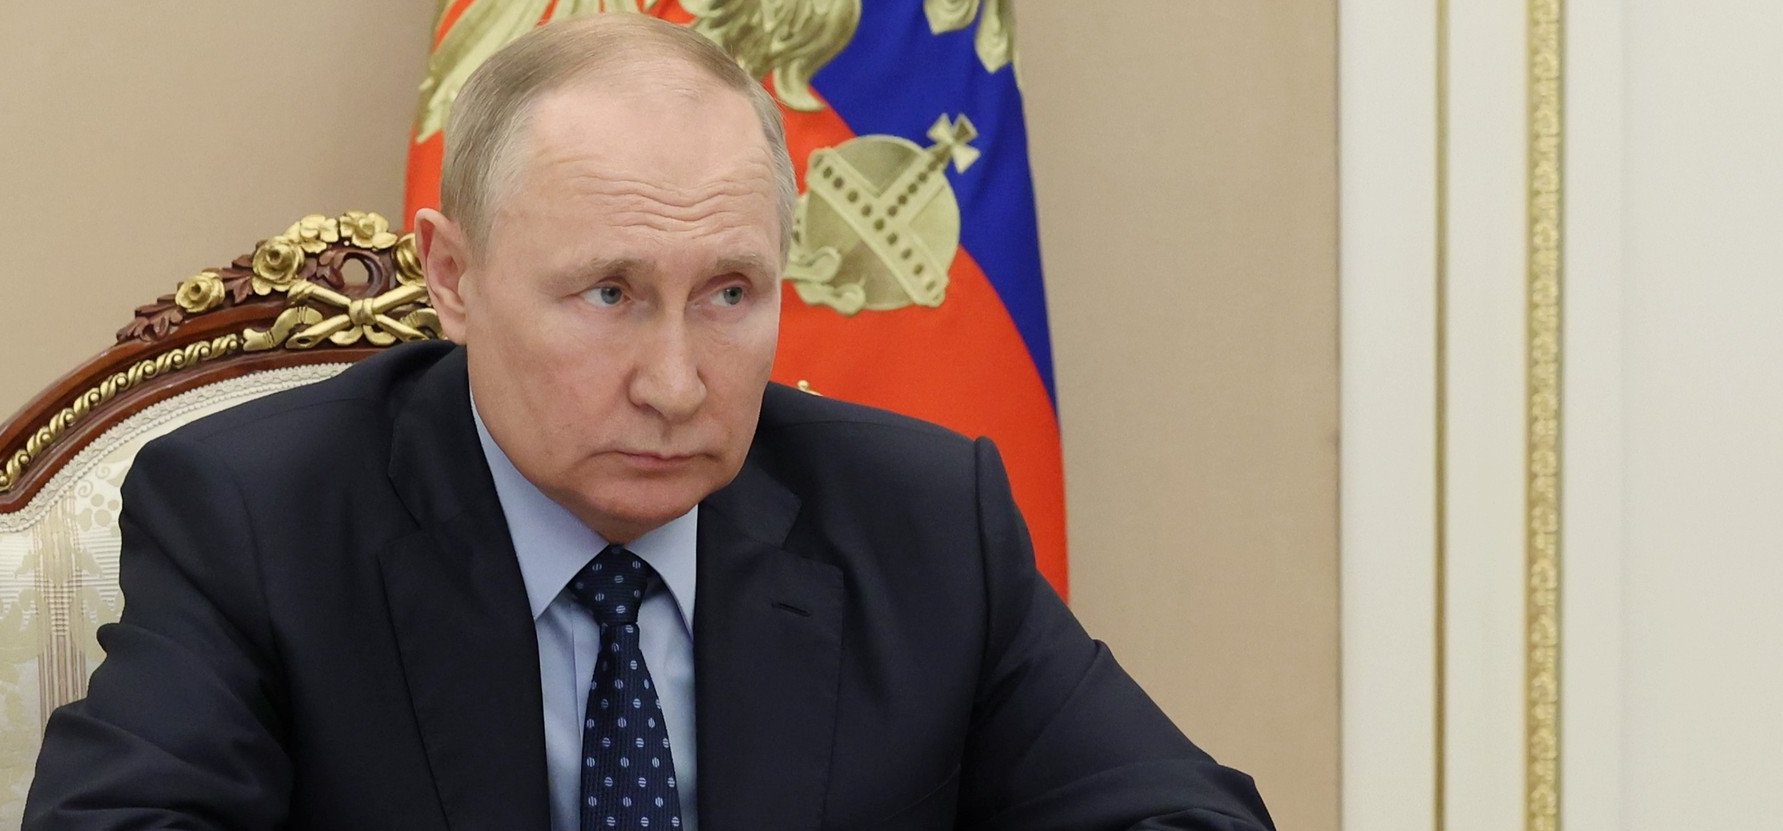 Putyinnak területi követelései vannak az Egyesült Államokkal szemben? – Fokozódik a dili a háborúban